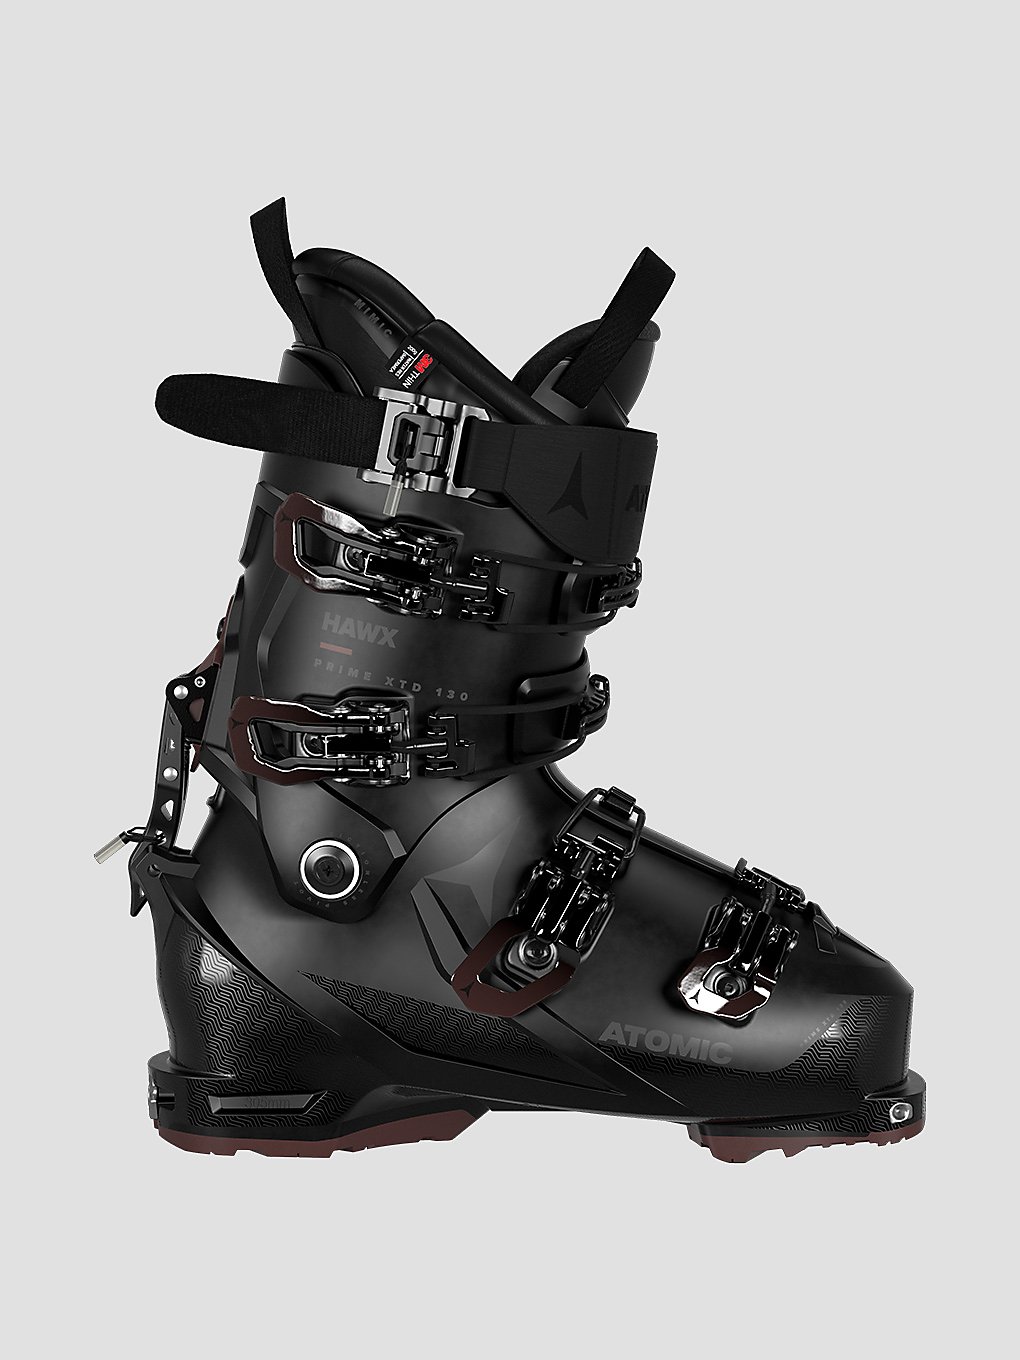 Atomic Hawx Prime XTD 130 CT 2023 Ski Boots rust